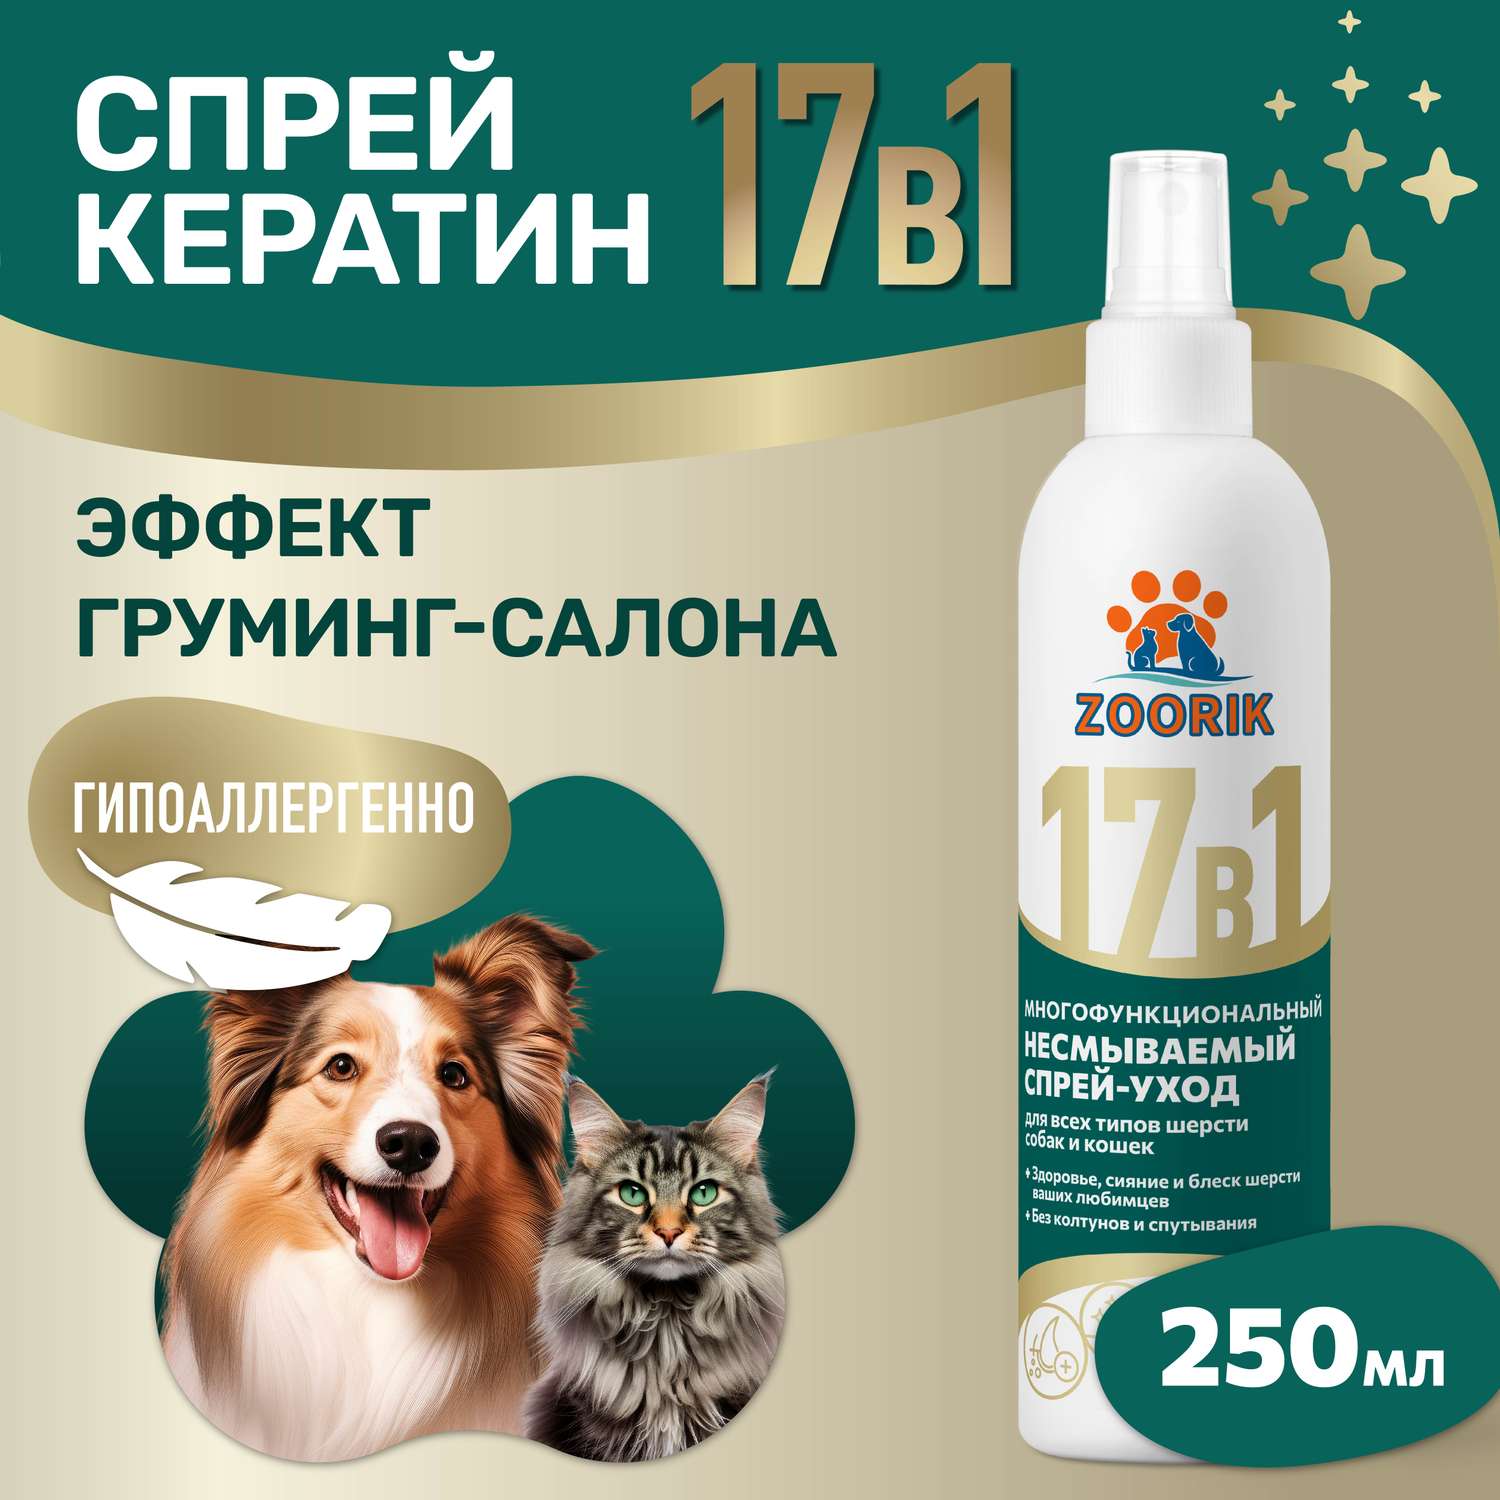 Спрей ZOORIK для собак и кошек многофункциональный 17 в 1 250 мл - фото 2